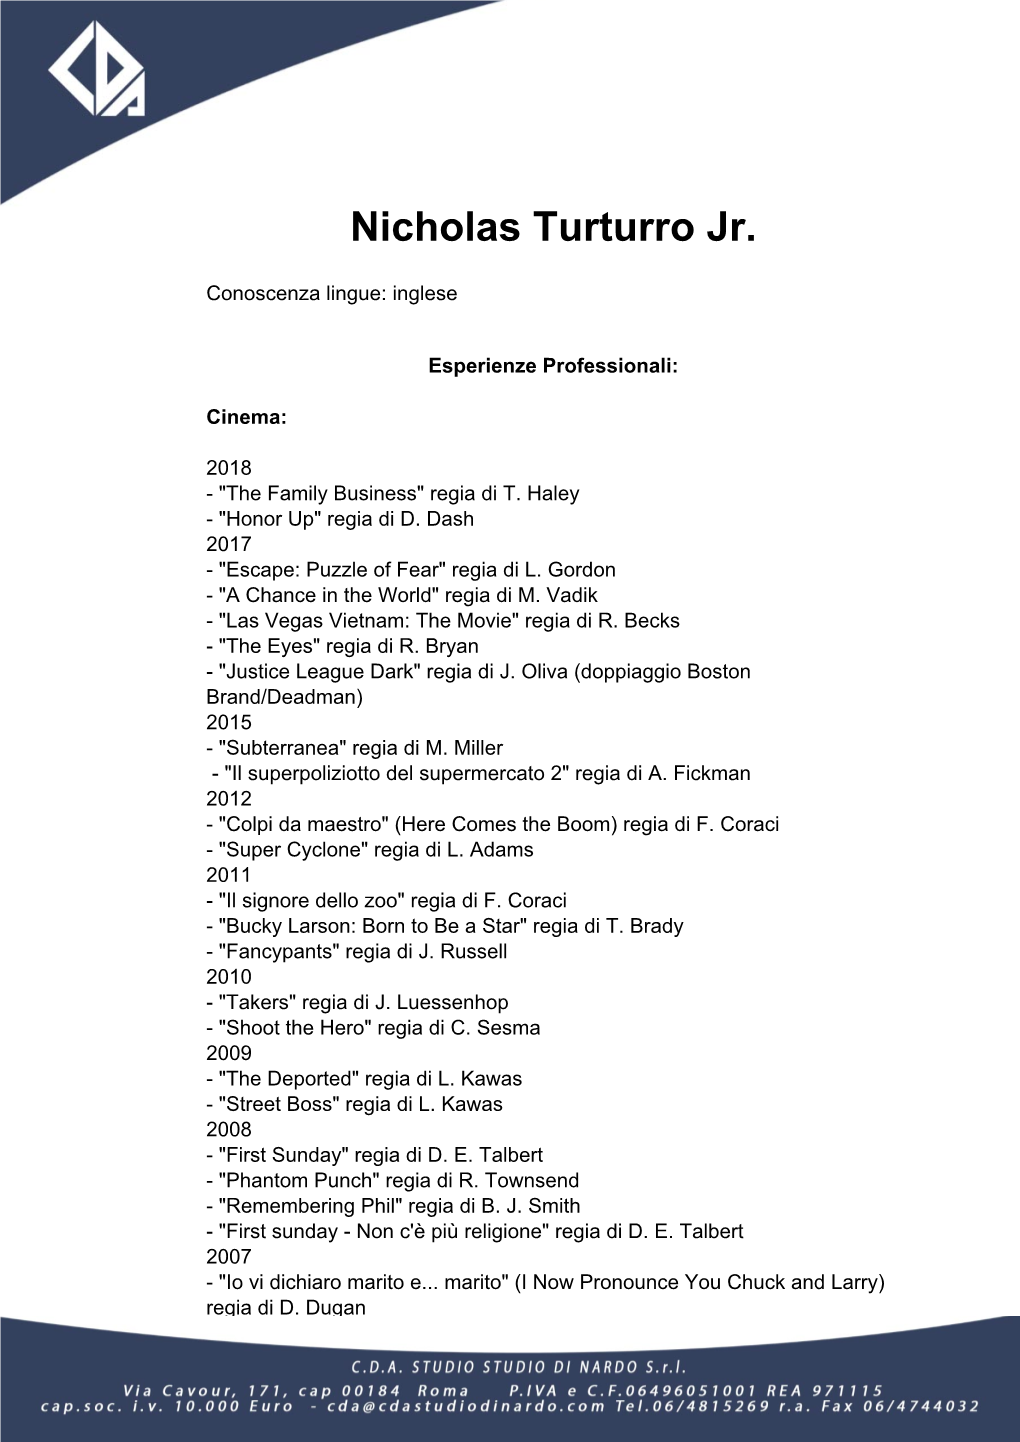 Nicholas Turturro Jr